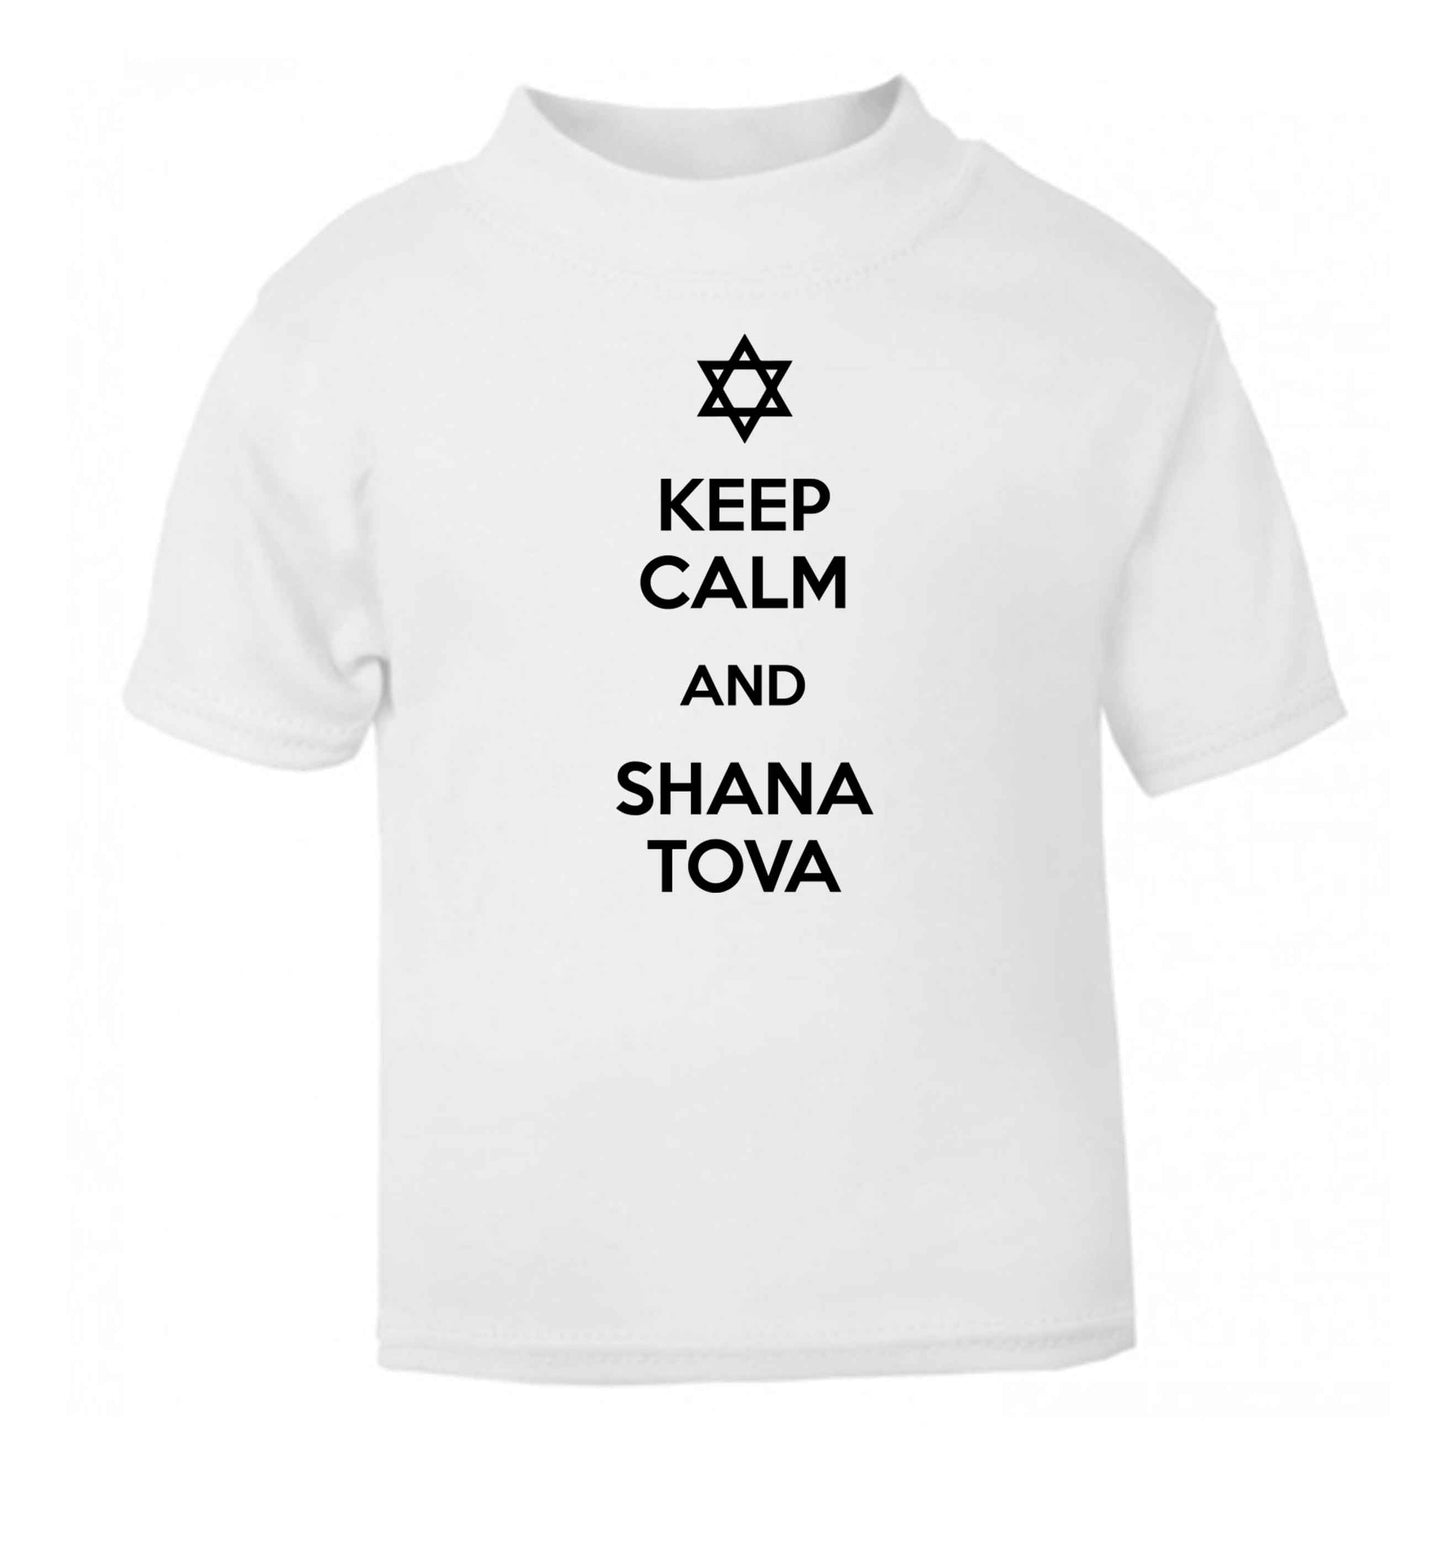 Keep calm and shana tova white Baby Toddler Tshirt 2 Years